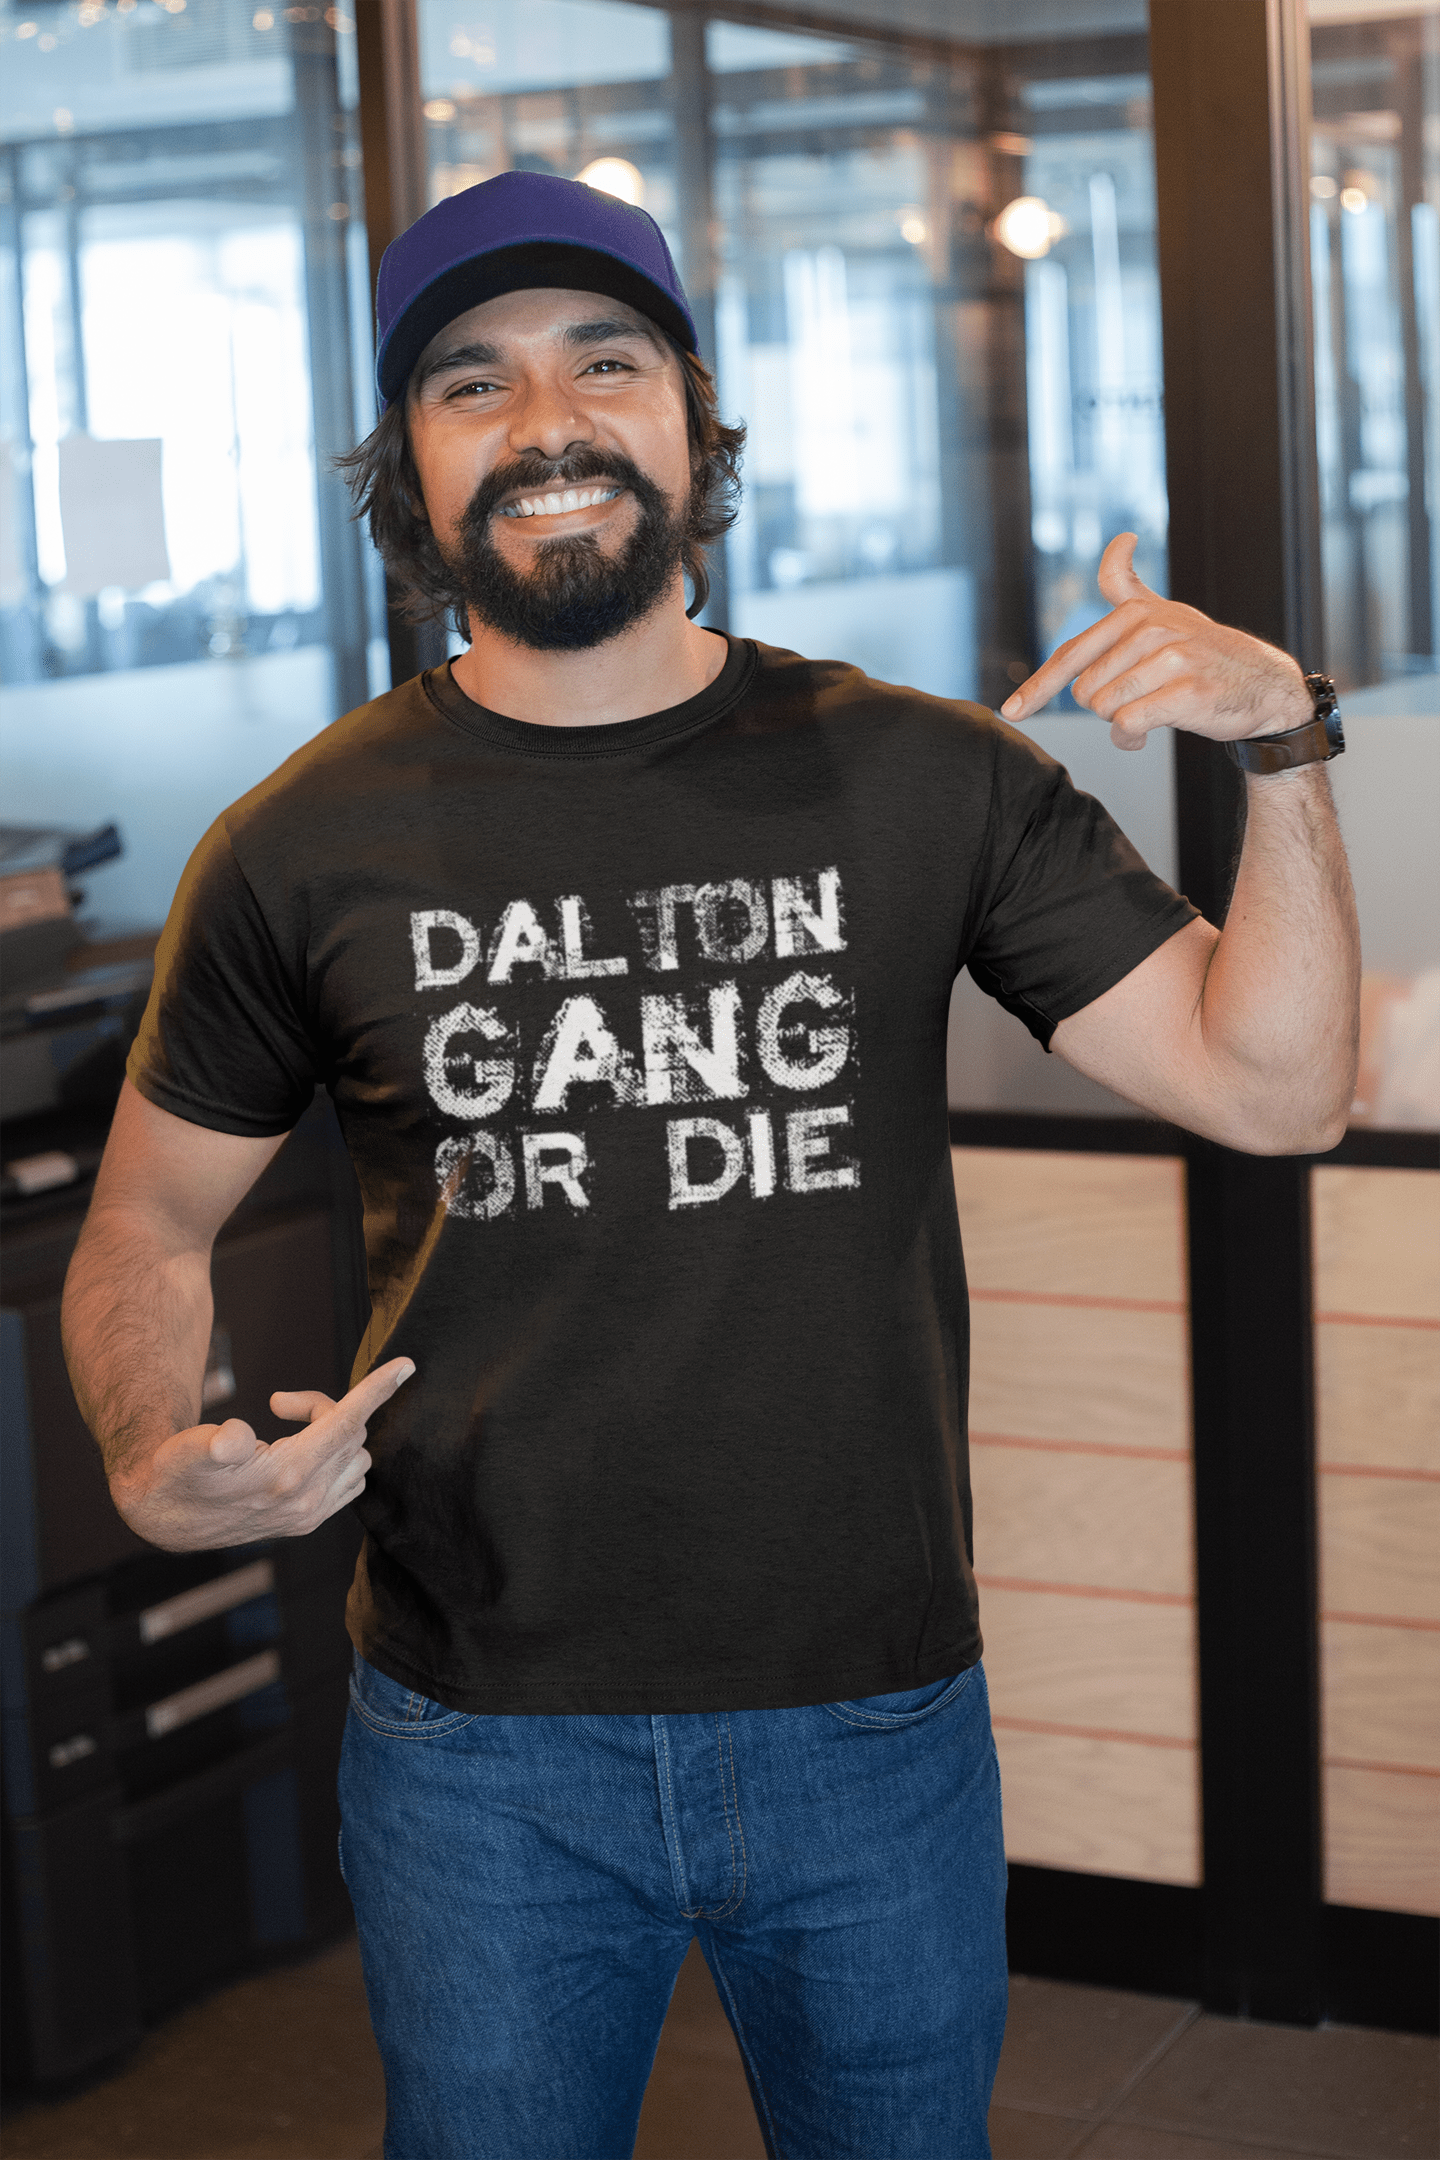 DALTON Family Gang Tshirt, Men's Tshirt, Black Tshirt, Gift T-shirt 00033